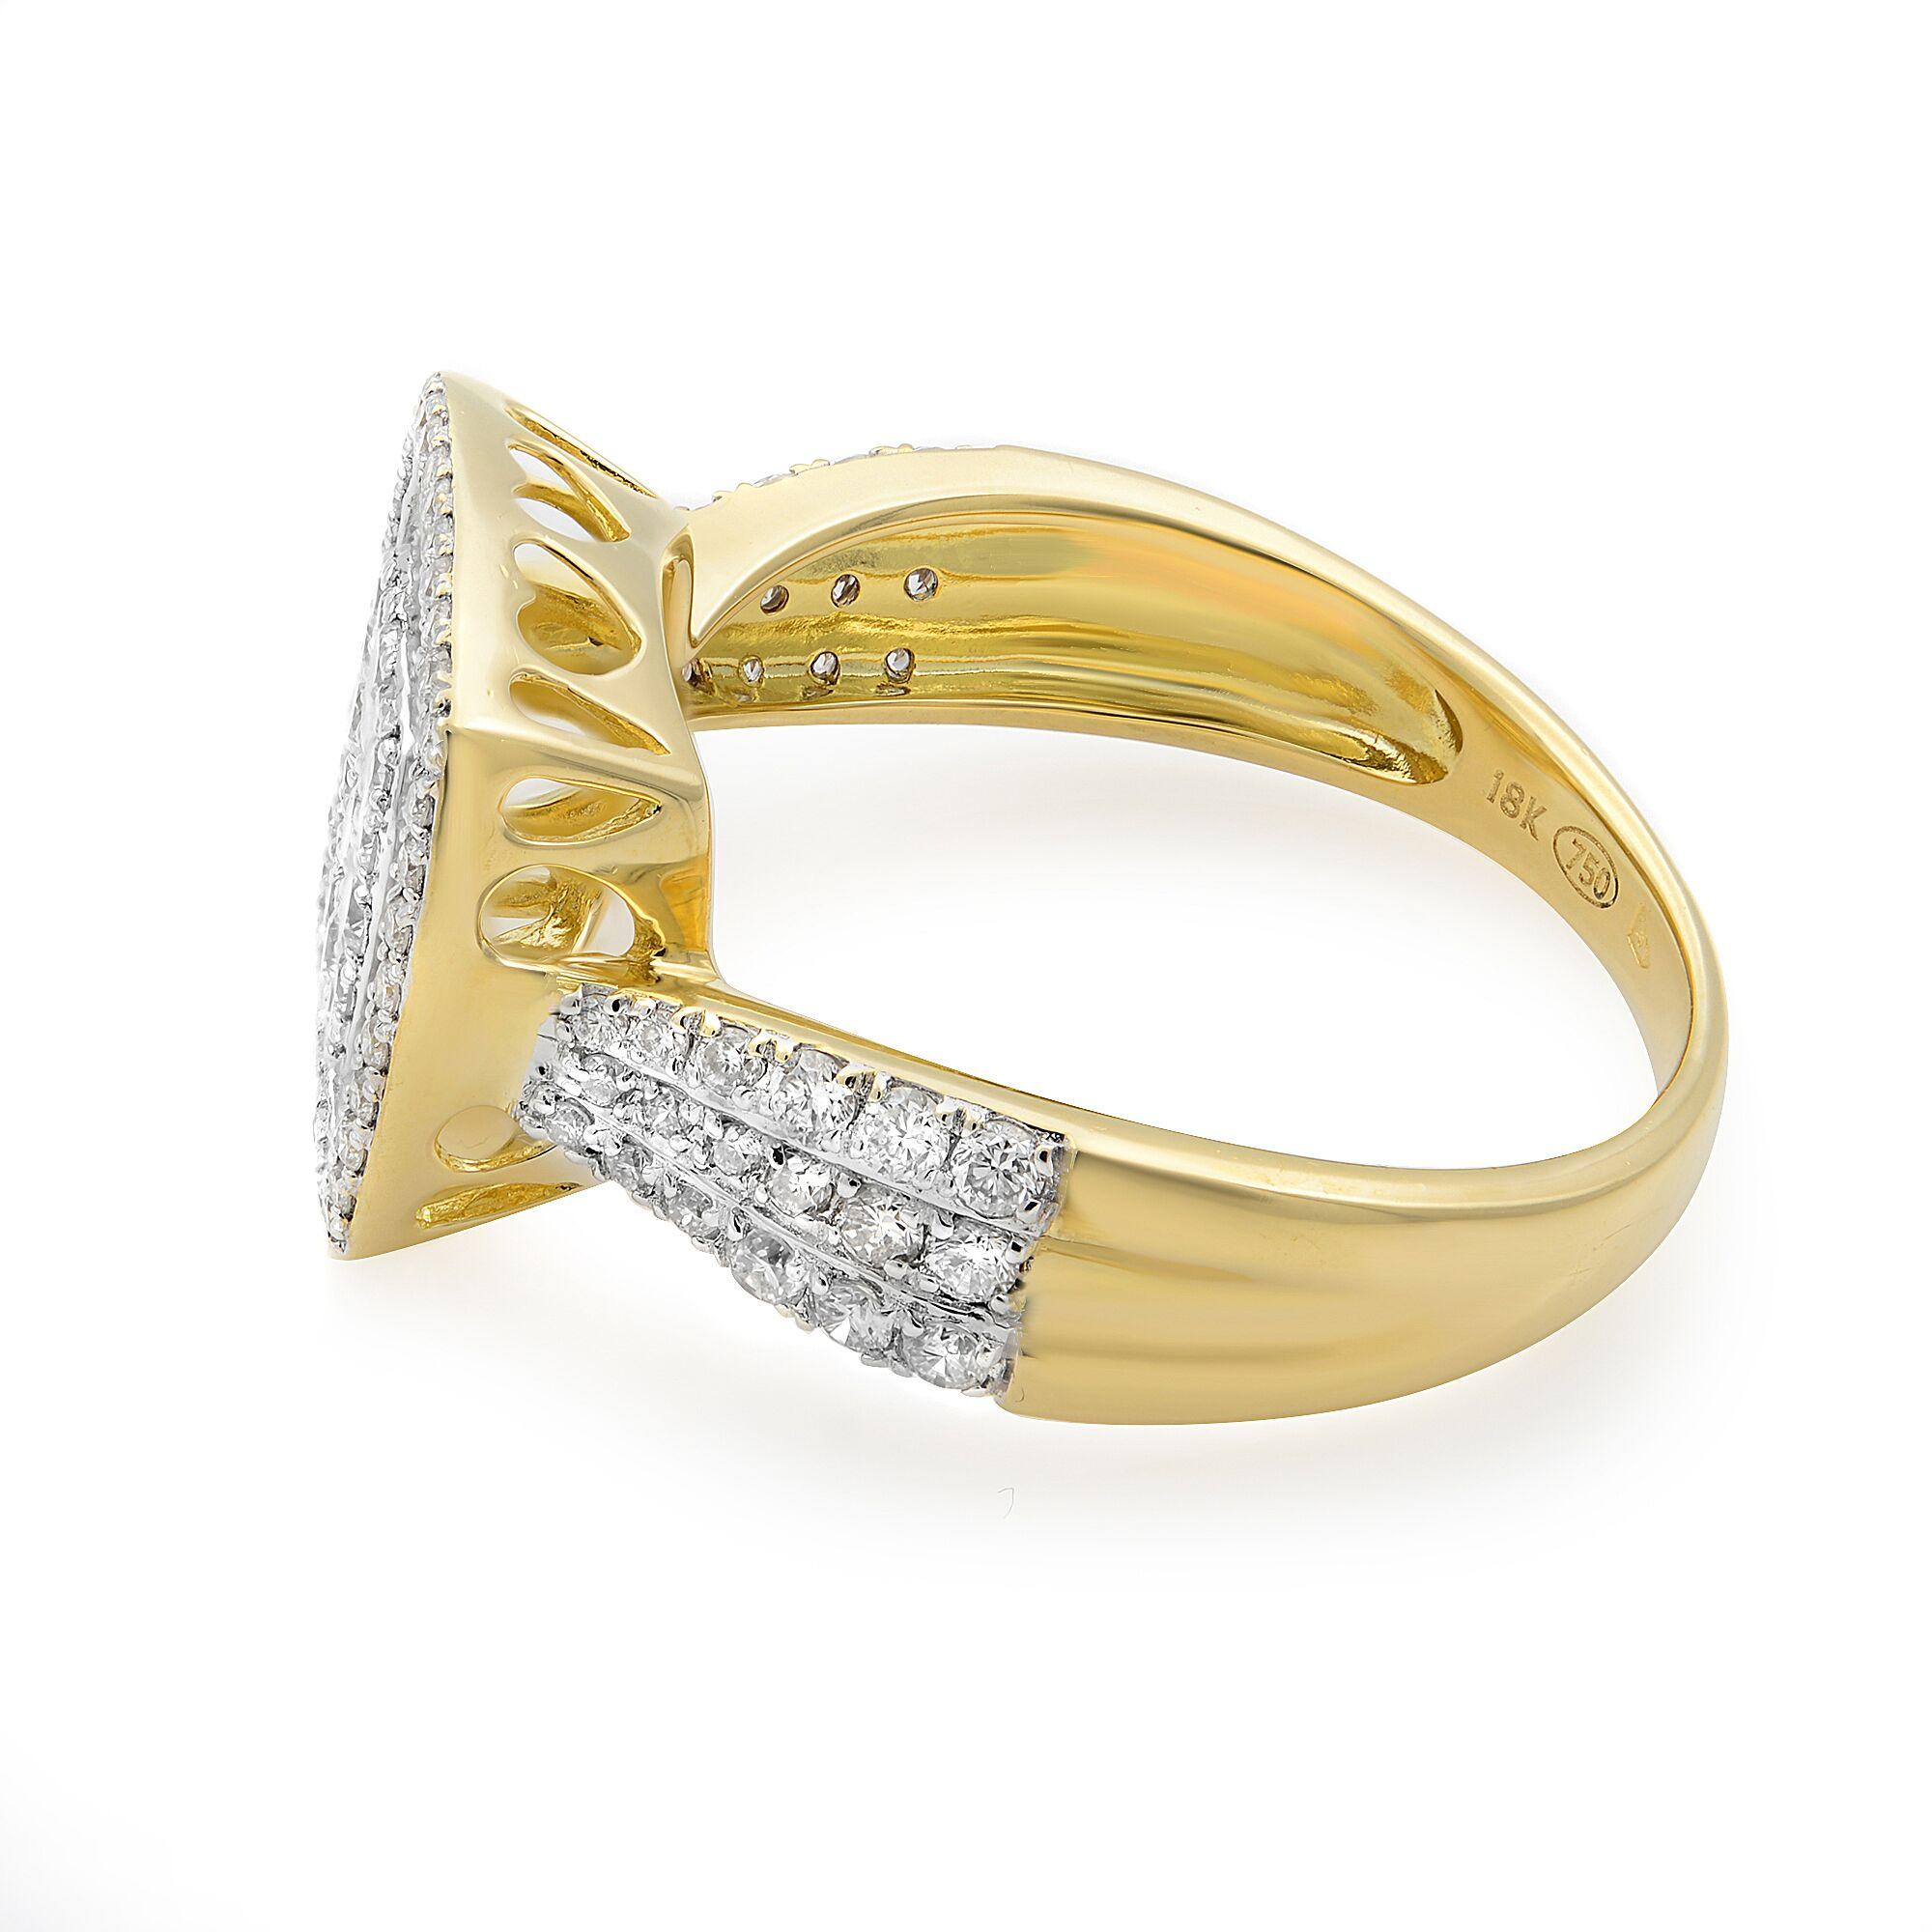 Dieser wunderschöne Verlobungsring aus 18 Karat Weißgold in Form eines kissenförmigen Multi-Diamanten-Halos ist mit runden Diamanten im Brillantschliff mit einem Gewicht von ca. 0,95cttw besetzt. Die Diamanten haben die Reinheit VS2 und die Farbe